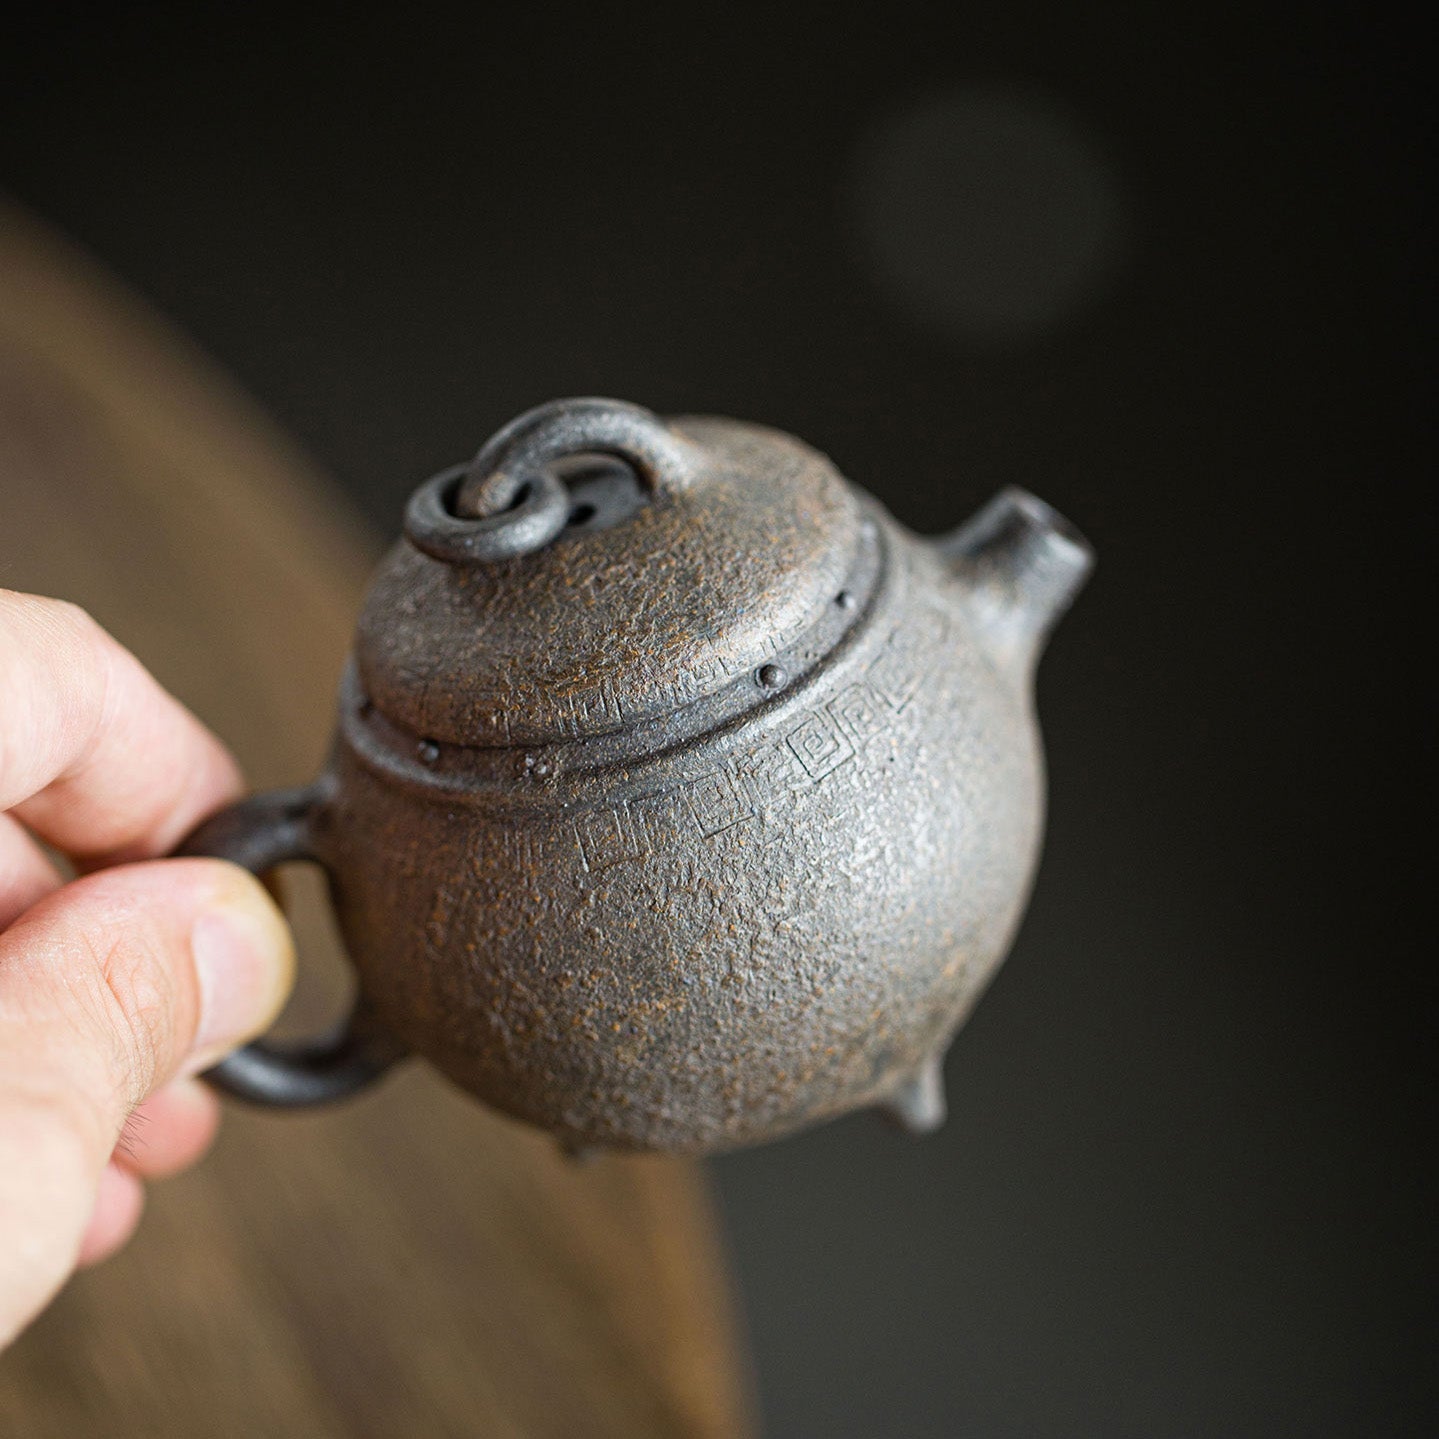 Three Feet Ju Lun Yixing Teapot   120ml